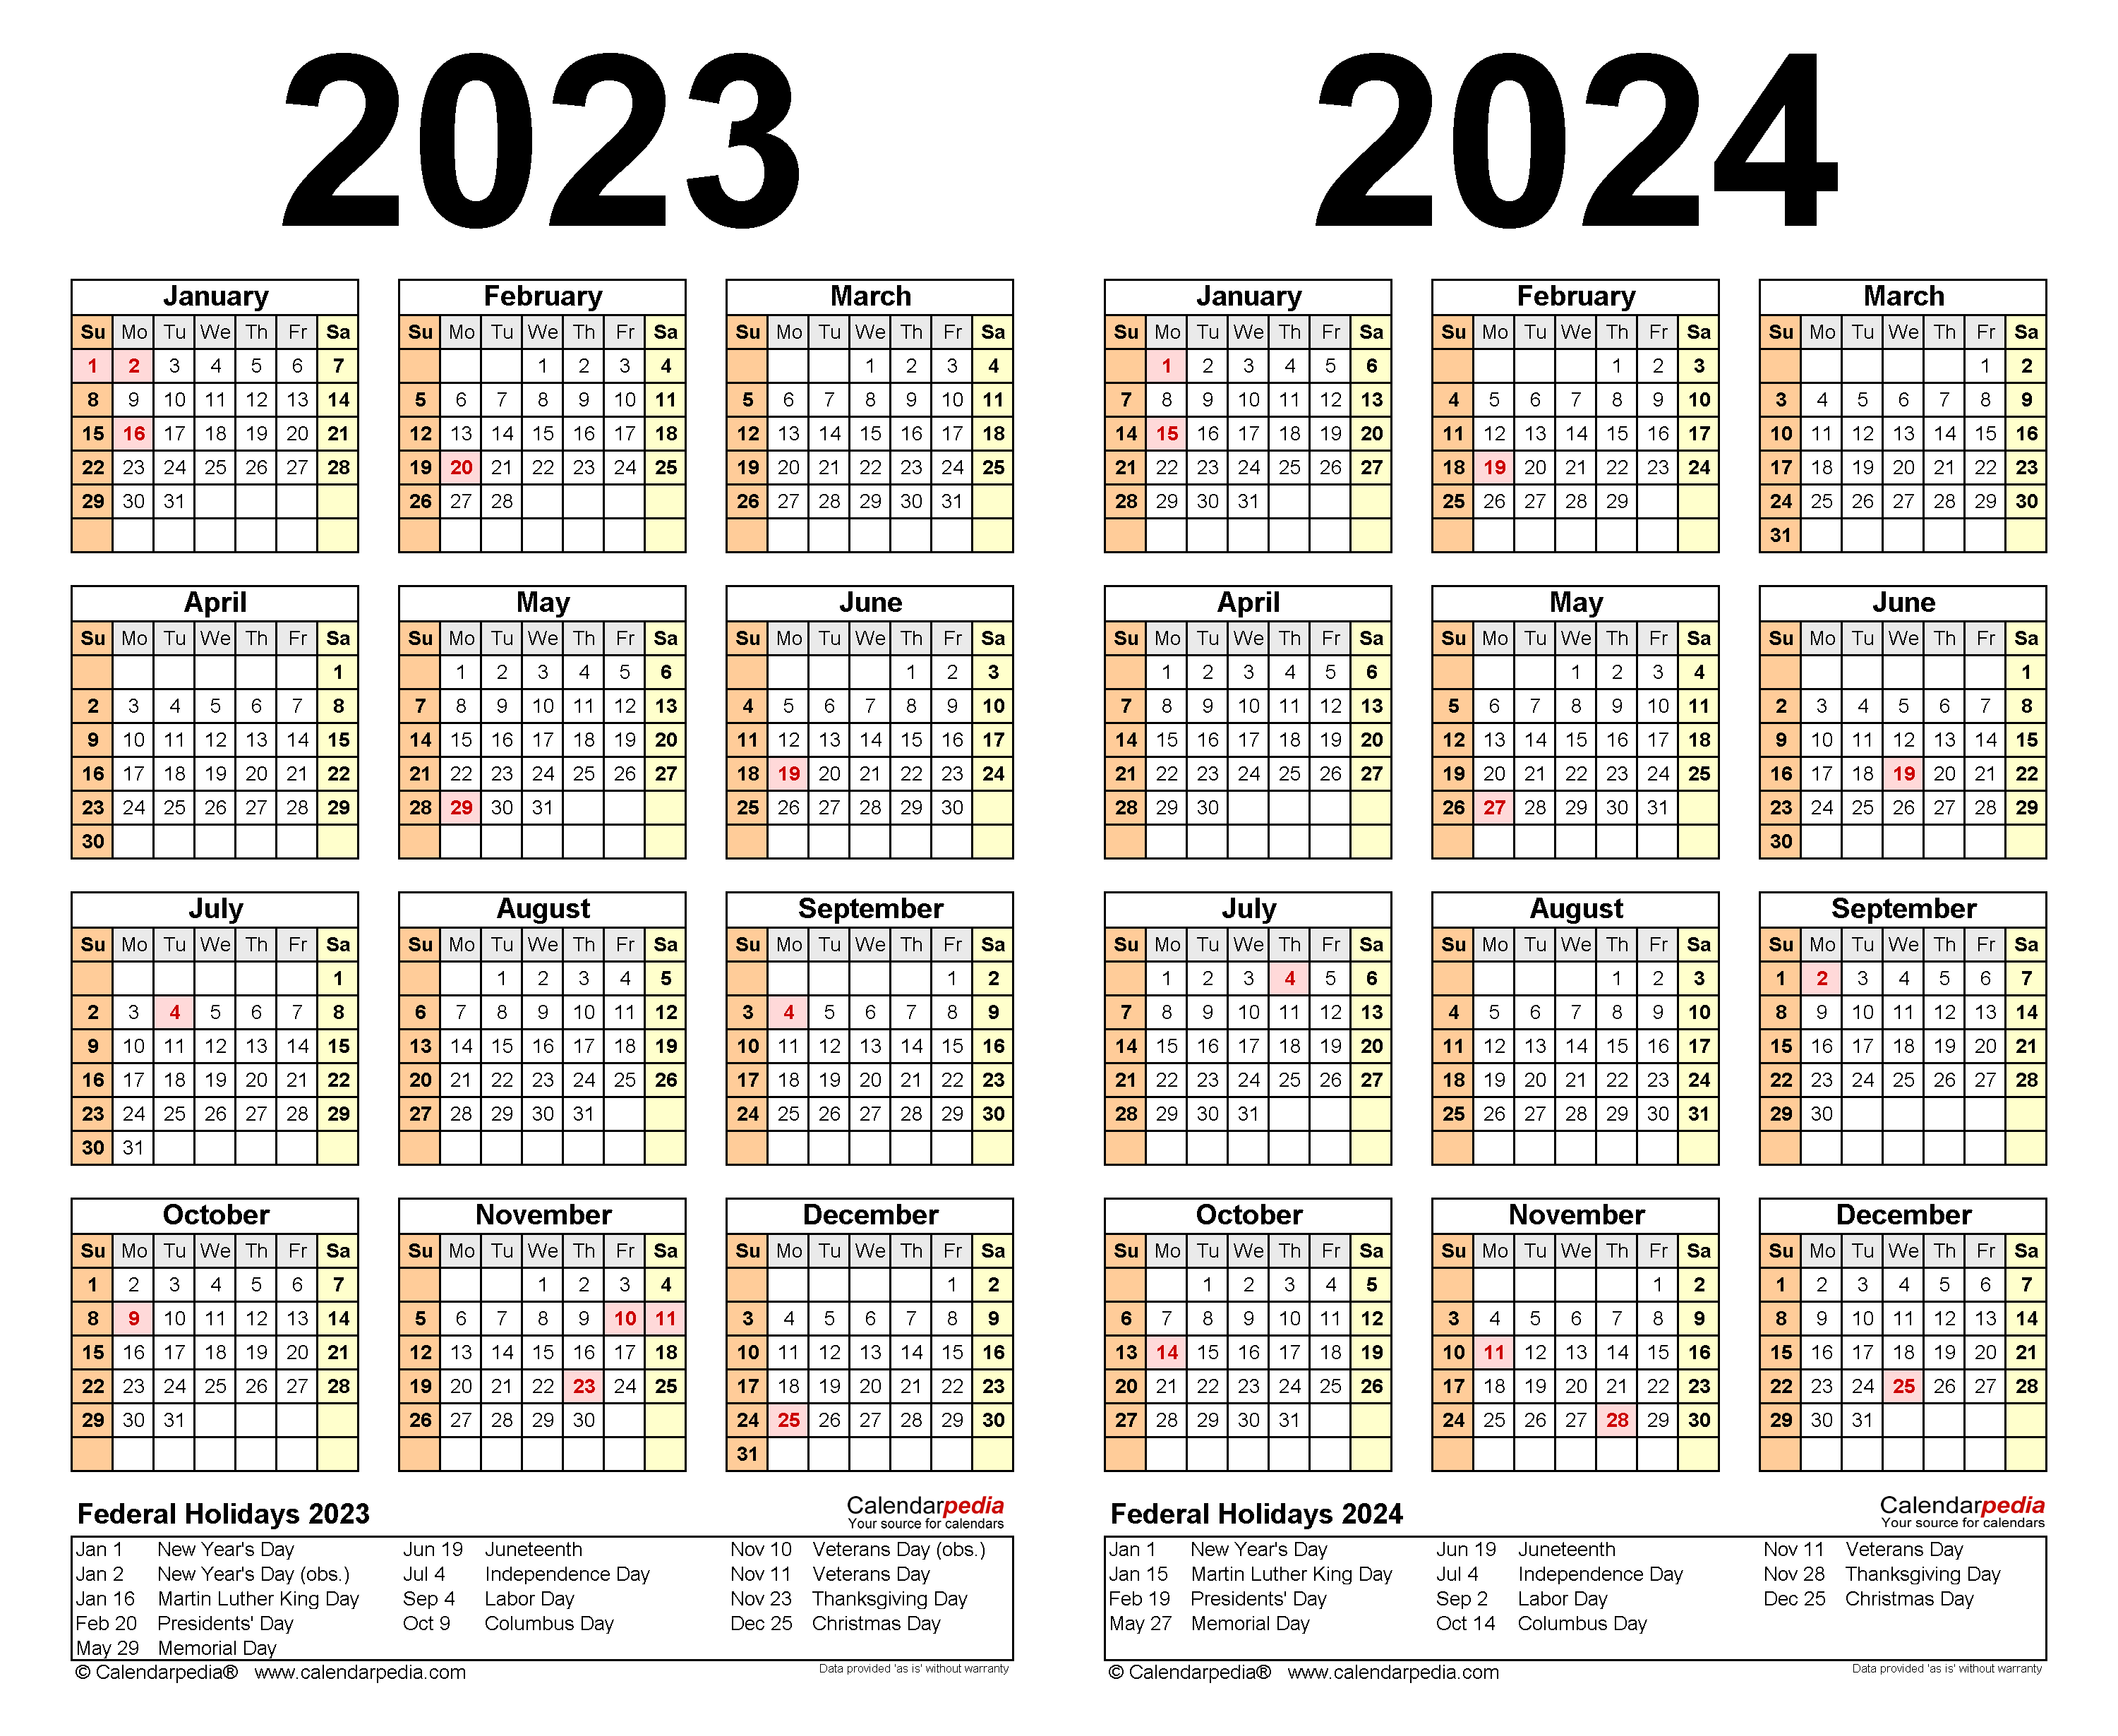 Punahou 2023 2024 Calendar Printable Calendar 2023